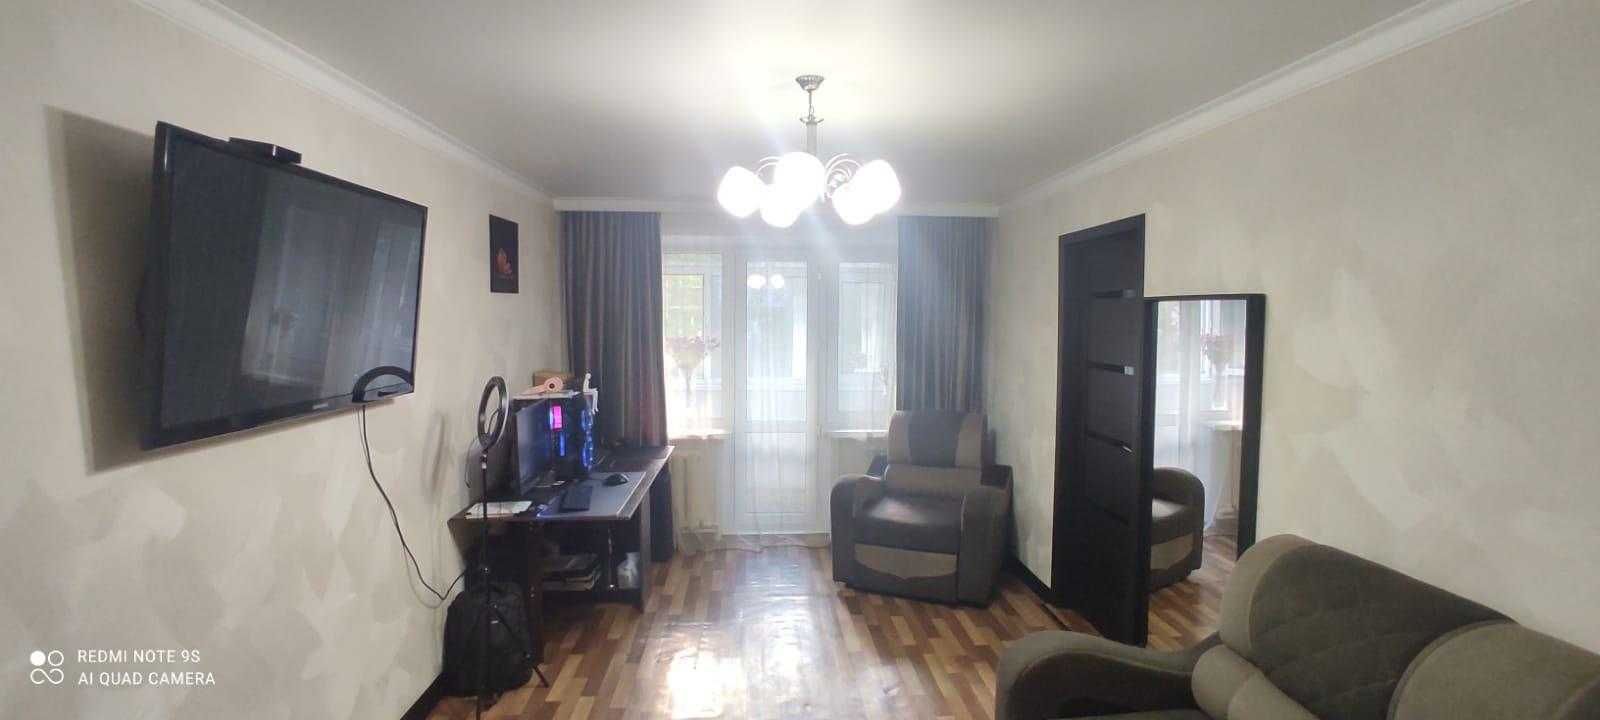 Продаю 3-х комнатную квартиру в 12 мкрн в Майкудуке